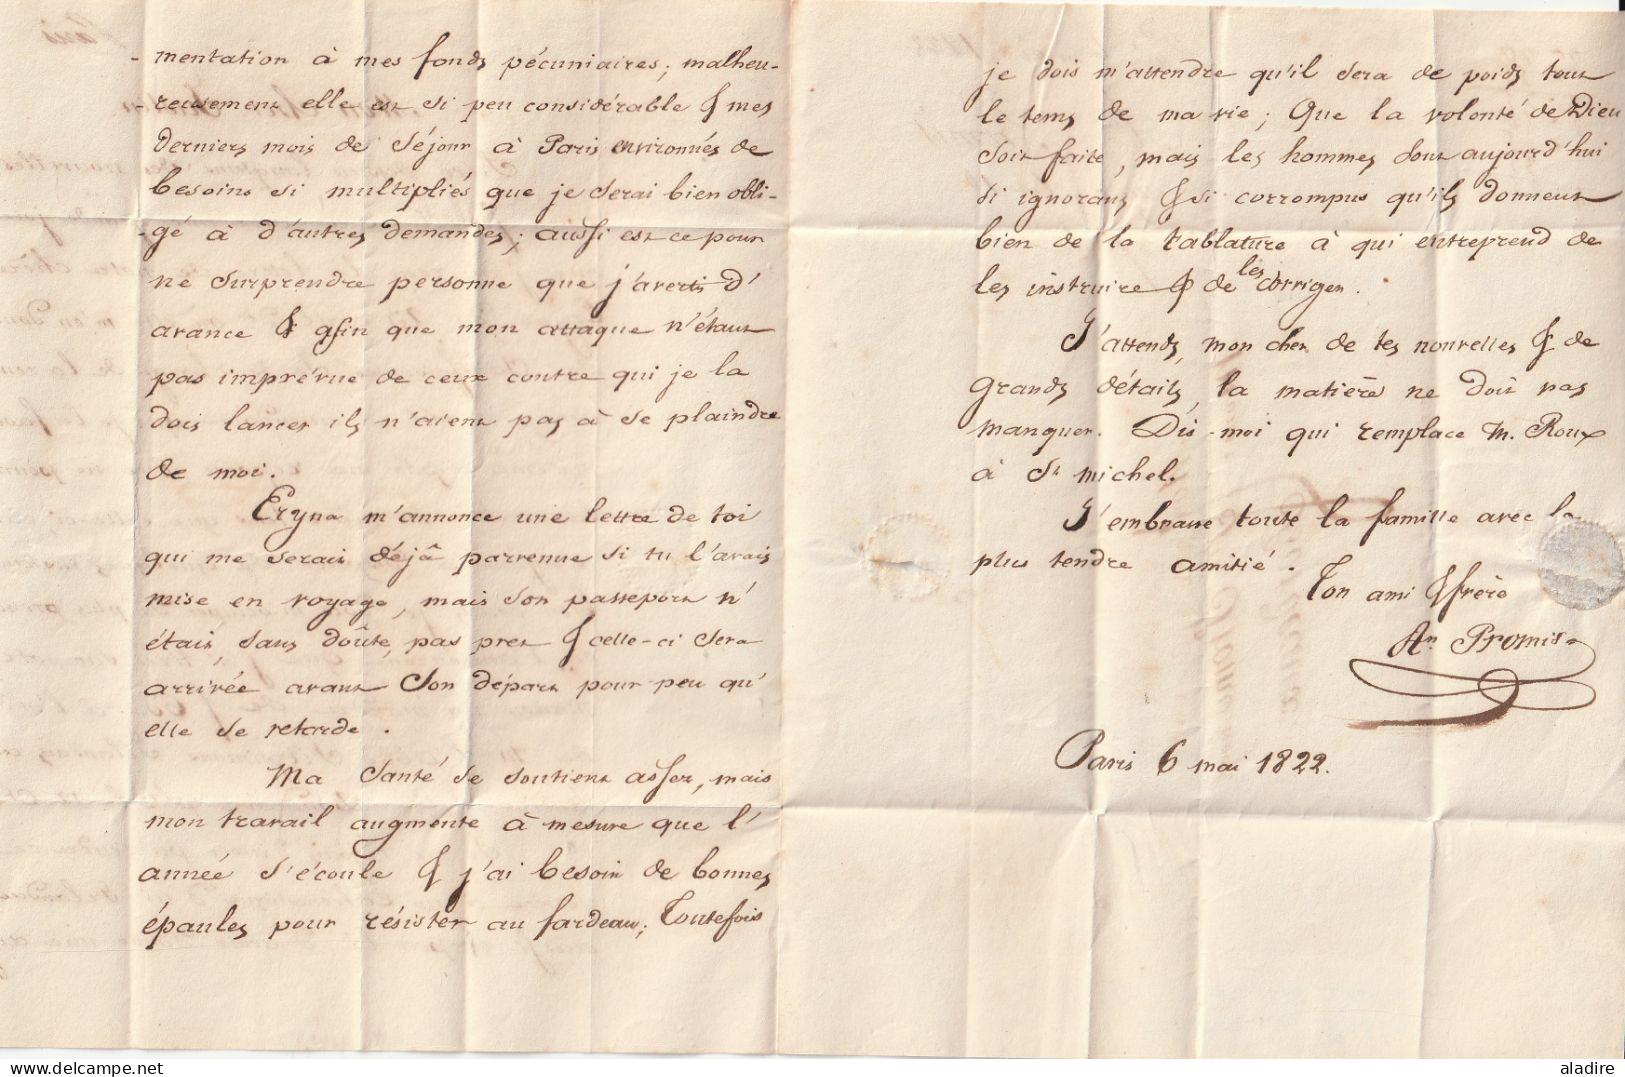 1822 - Lettre avec corresp amicale, pliée de 3 pages de Paris vers Bordeaux - taxe 8 - Chambre des Pairs